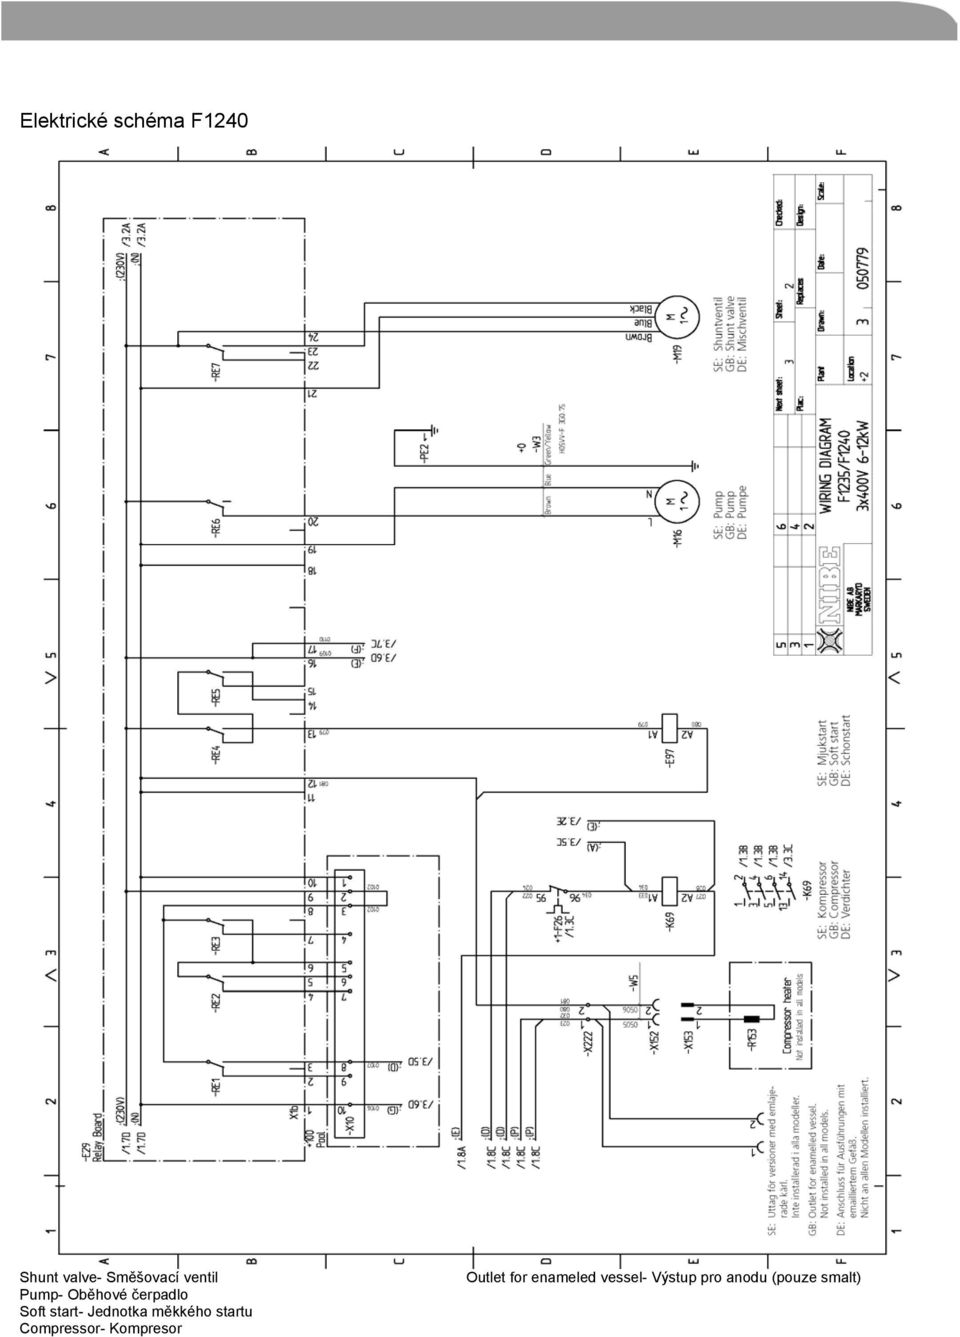 Jednotka měkkého startu Compressor- Kompresor